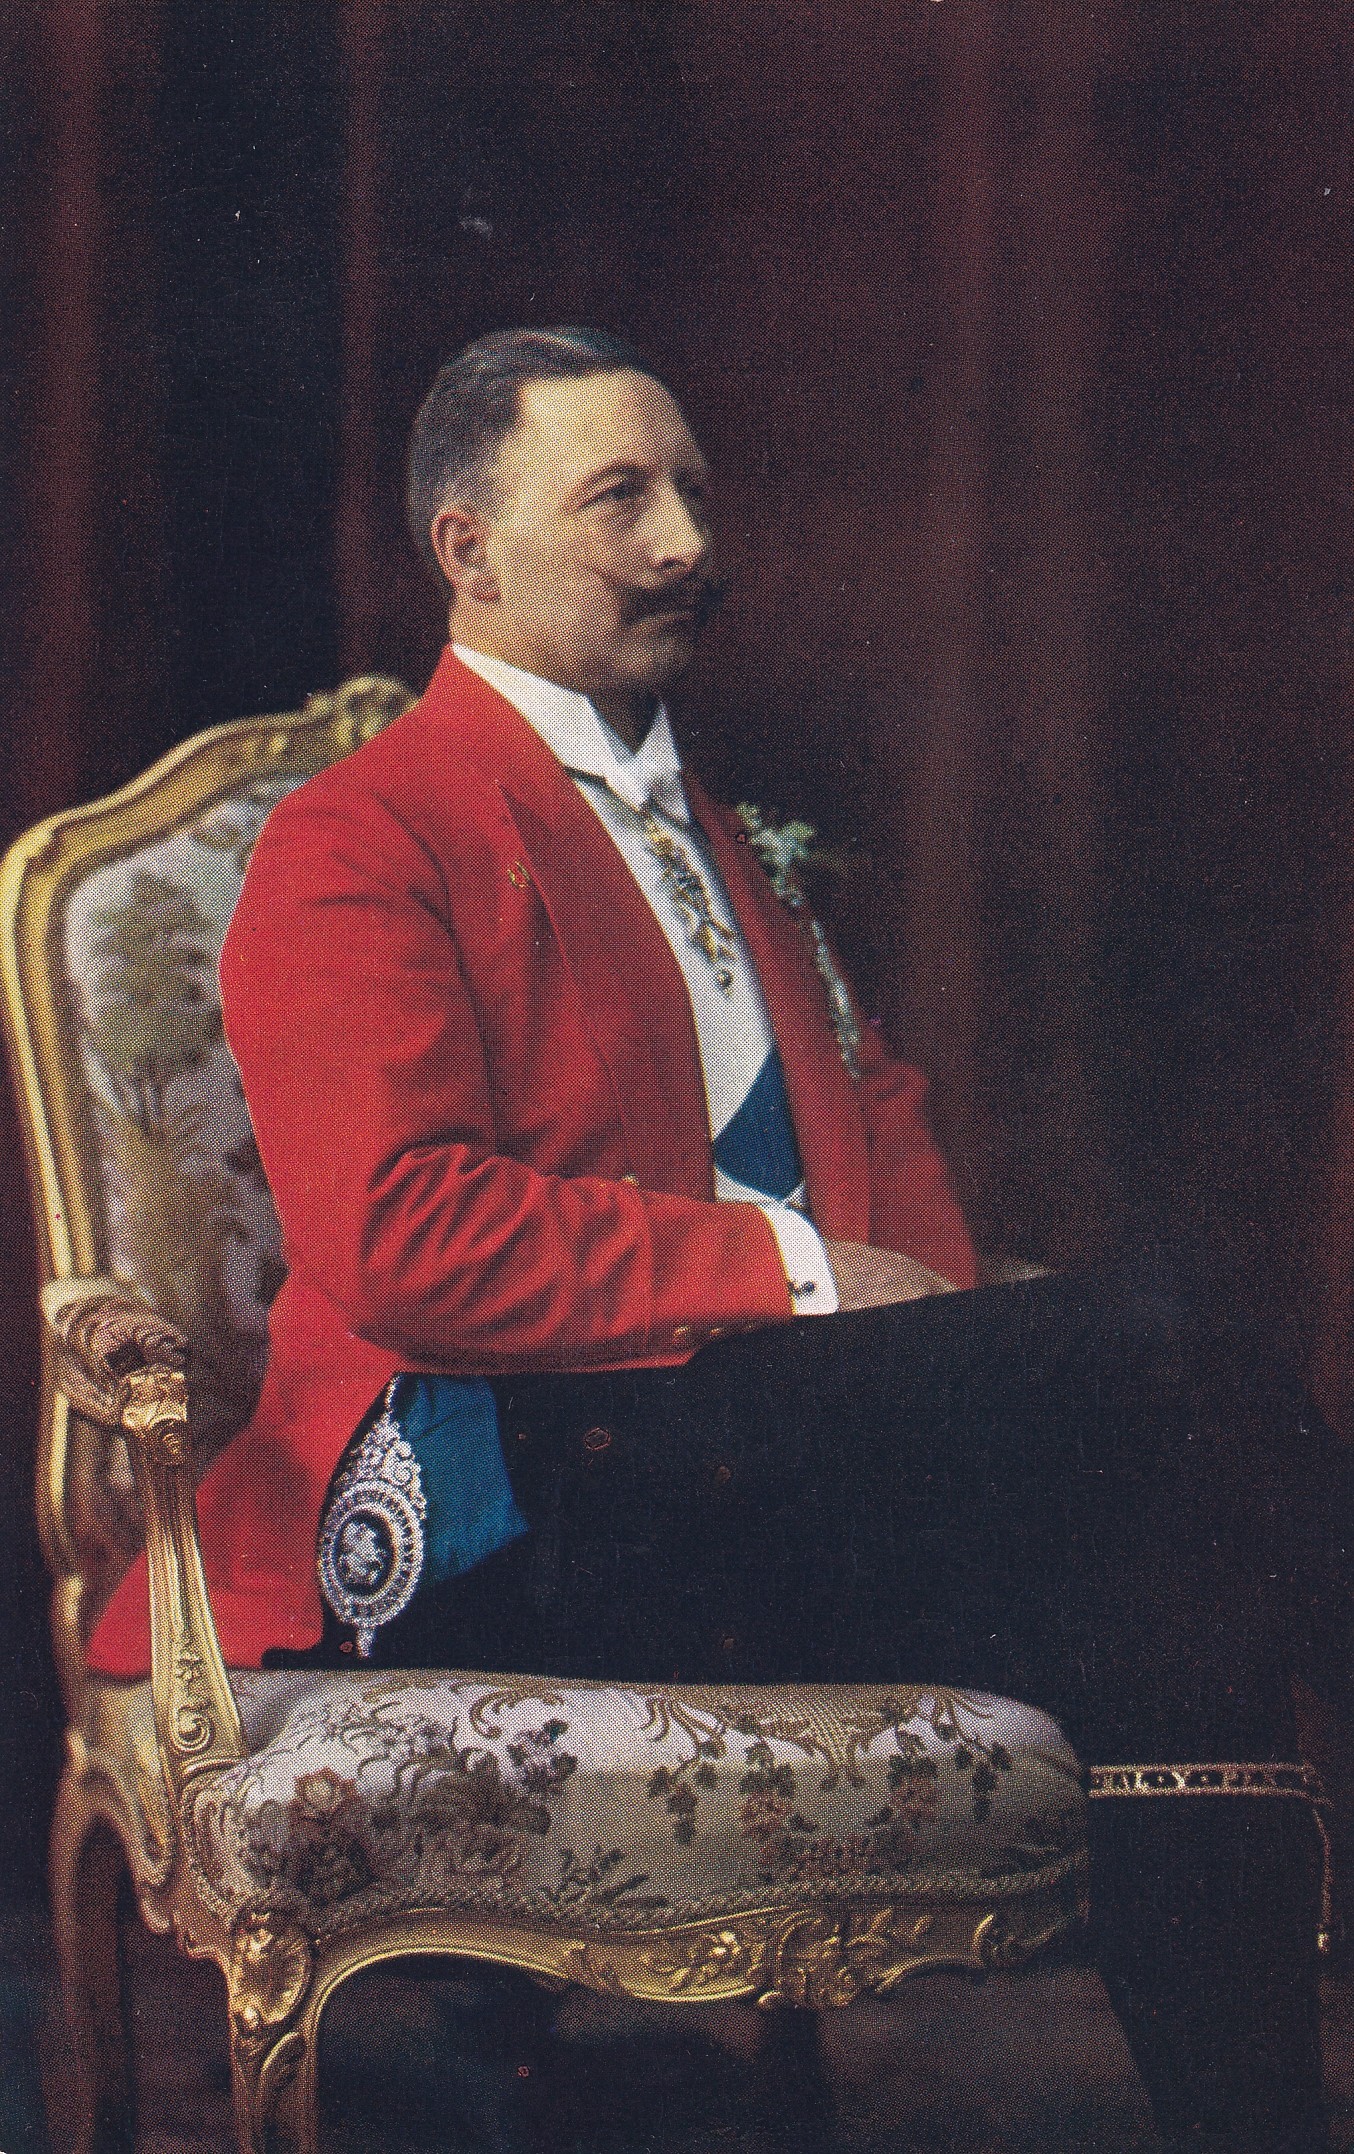 Bildpostkarte mit Porträt Kaiser Wilhelms II. (1859-1941) in rotem Frack, Dreifarbendruck 1906 (Schloß Wernigerode GmbH RR-F)